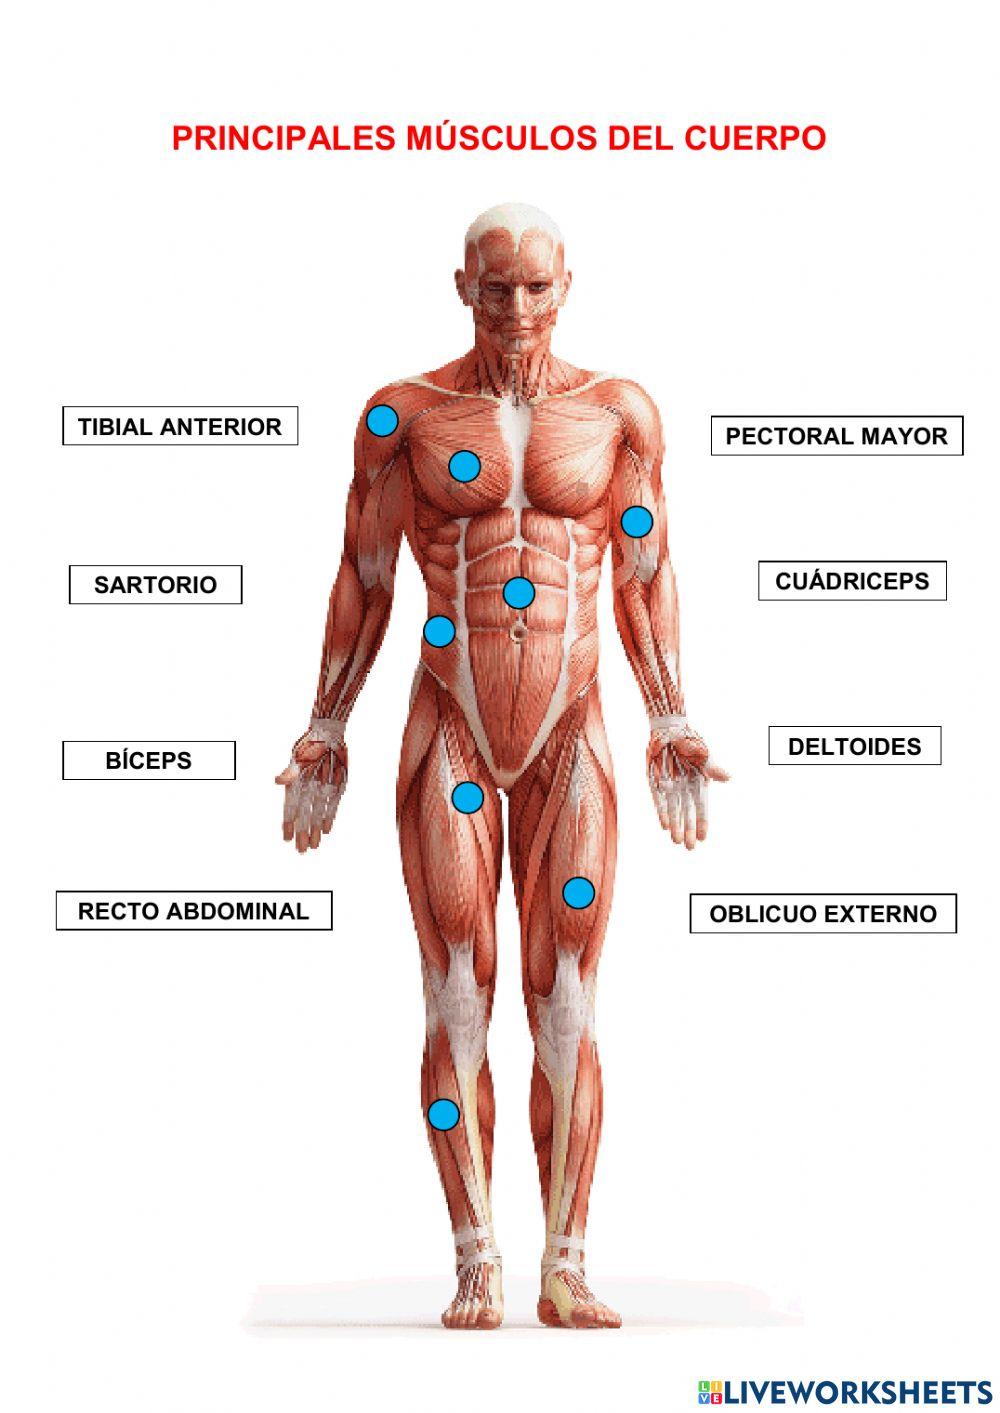 Principales músculos del cuerpo